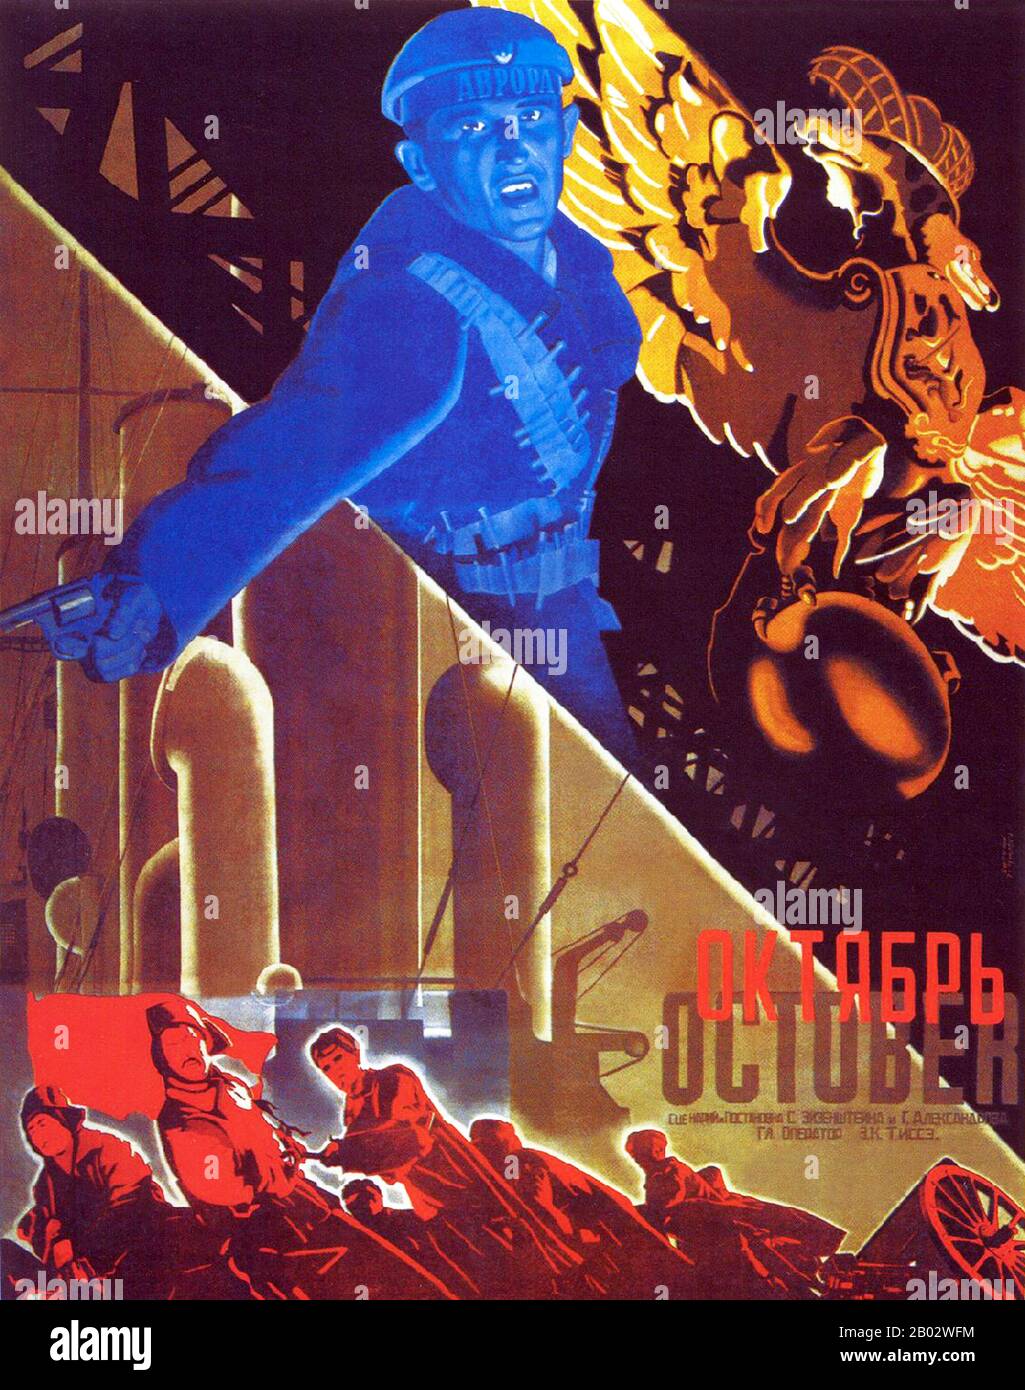 'Ottobre: Dieci giorni Che Hanno Scosso il mondo' è un film di propaganda silenziosa sovietica del 1928 di Sergei Eisenstein e Grigori Aleksandrov. Si tratta di una drammatizzazione celebrativa della Rivoluzione d'Ottobre del 1917 commissionata per il decimo anniversario dell'evento. Originariamente pubblicato come 'Ottobre' in Unione Sovietica, il film è stato ri-editato e rilasciato a livello internazionale come 'dieci giorni Che Hanno Scosso il mondo', dopo il popolare libro di John Reed sulla Rivoluzione. Foto Stock